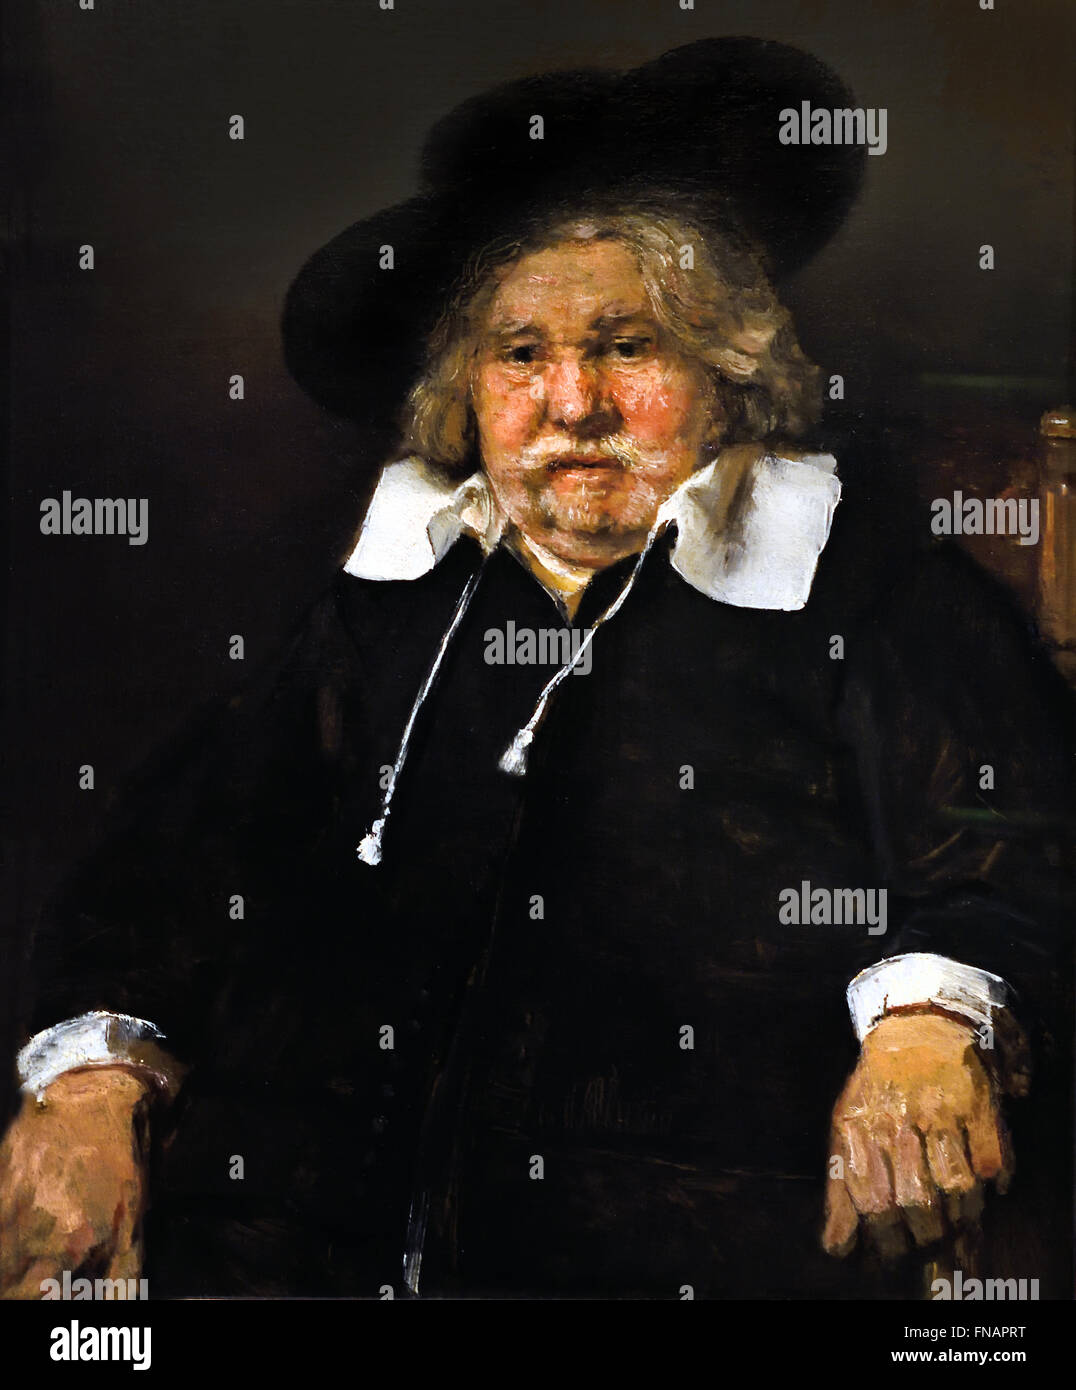 Porträt der ein älterer Mann sitzt, möglicherweise Pieter De La Tombe 1667 Rembrandt Harmenszoon van Rijn1606 – 1669 Niederlande Niederlande Stockfoto